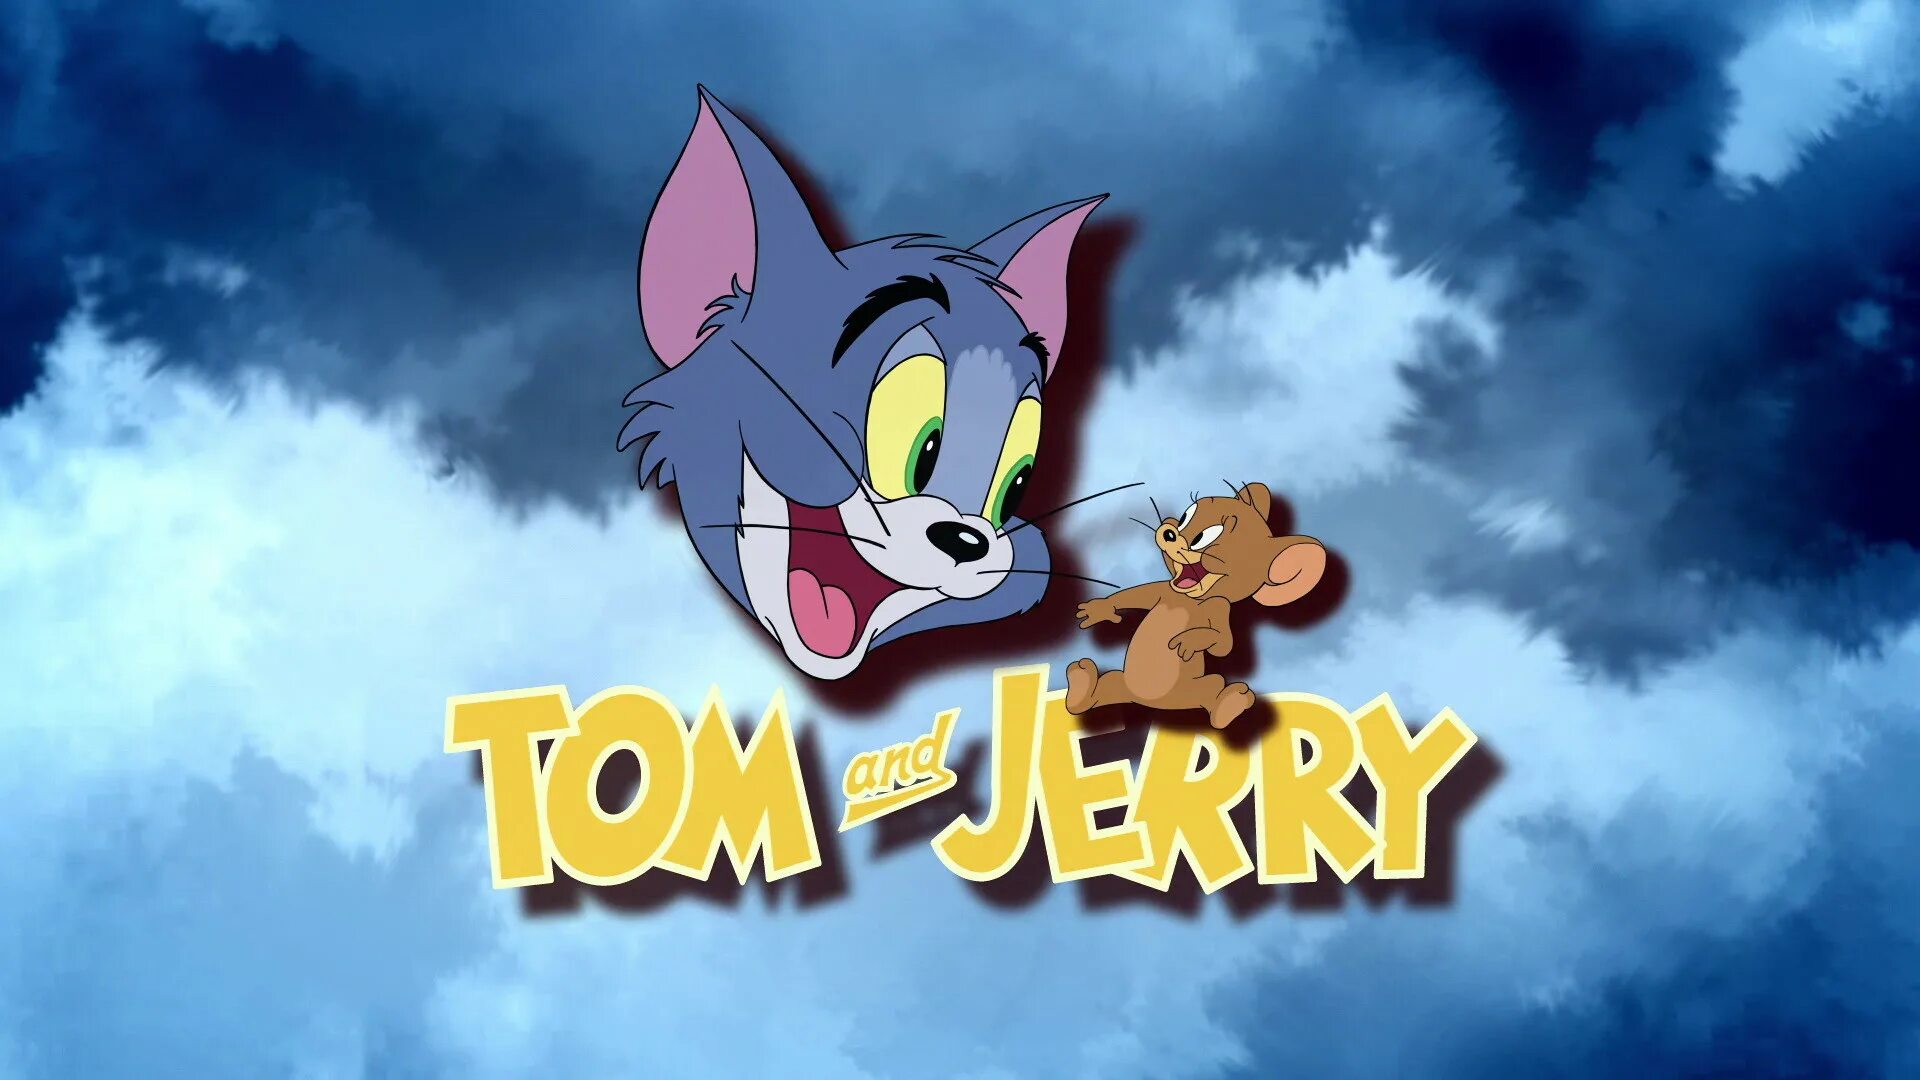 Том и джерри россия. Том и Джерри 1920х1080. Том и Джерри Tom and Jerry. Том и Джерри 1967.